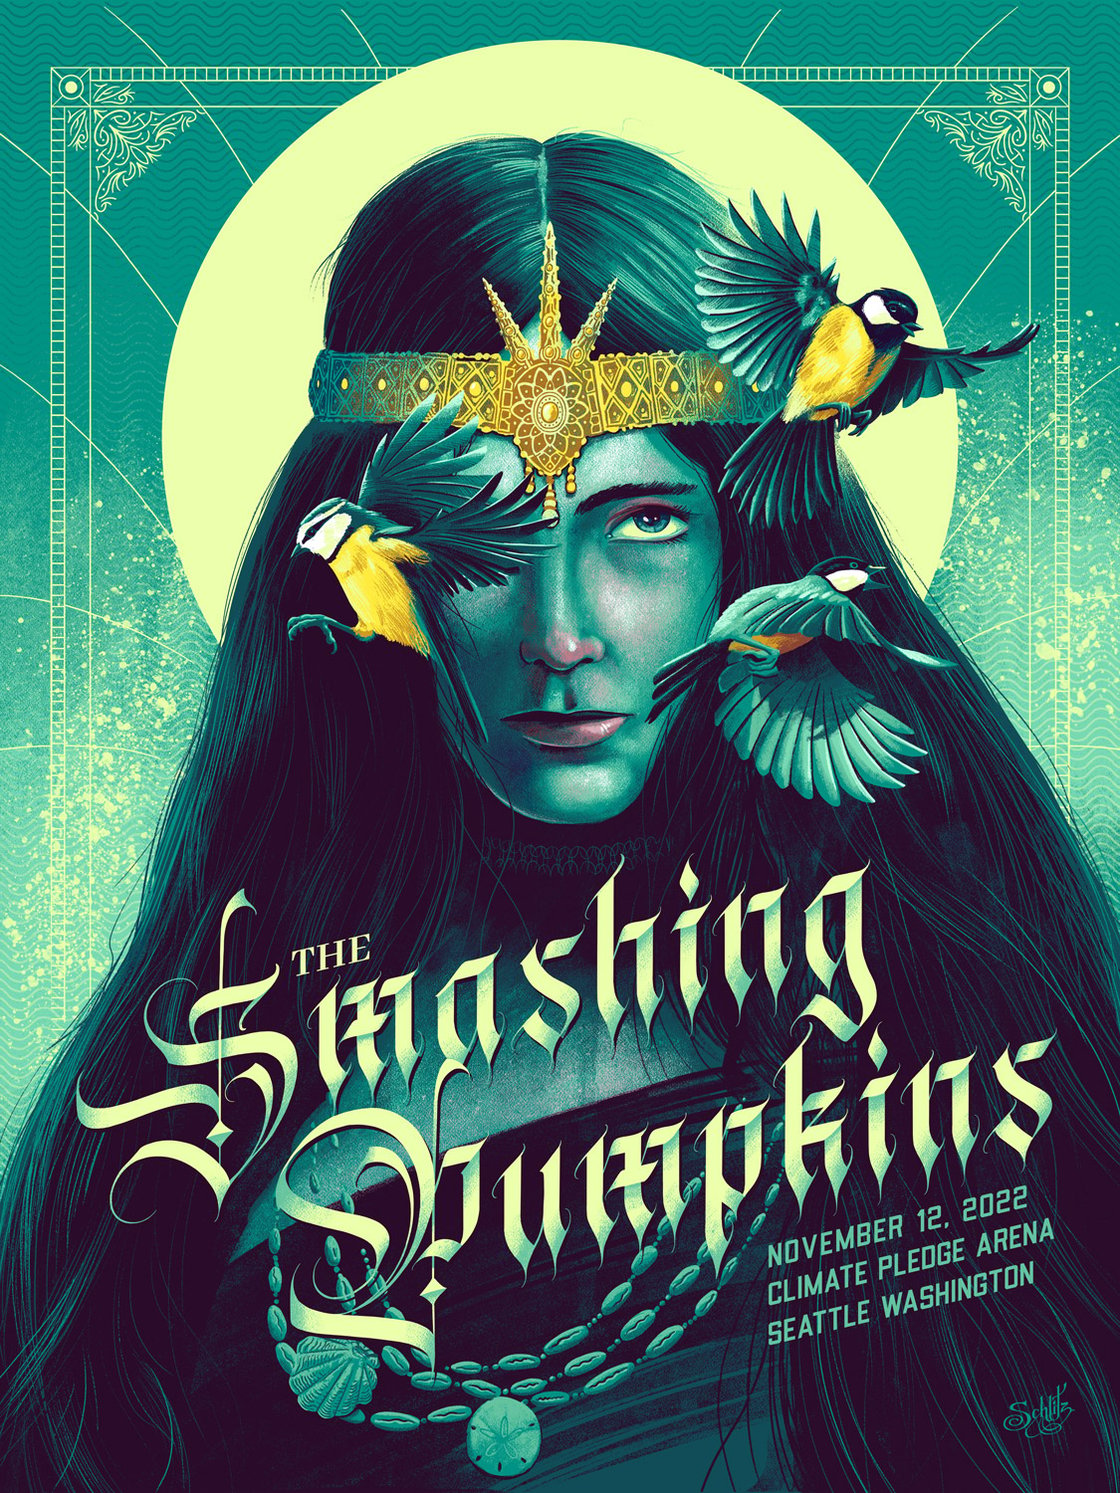 Image of The Smashing Pumpkins - Seattle